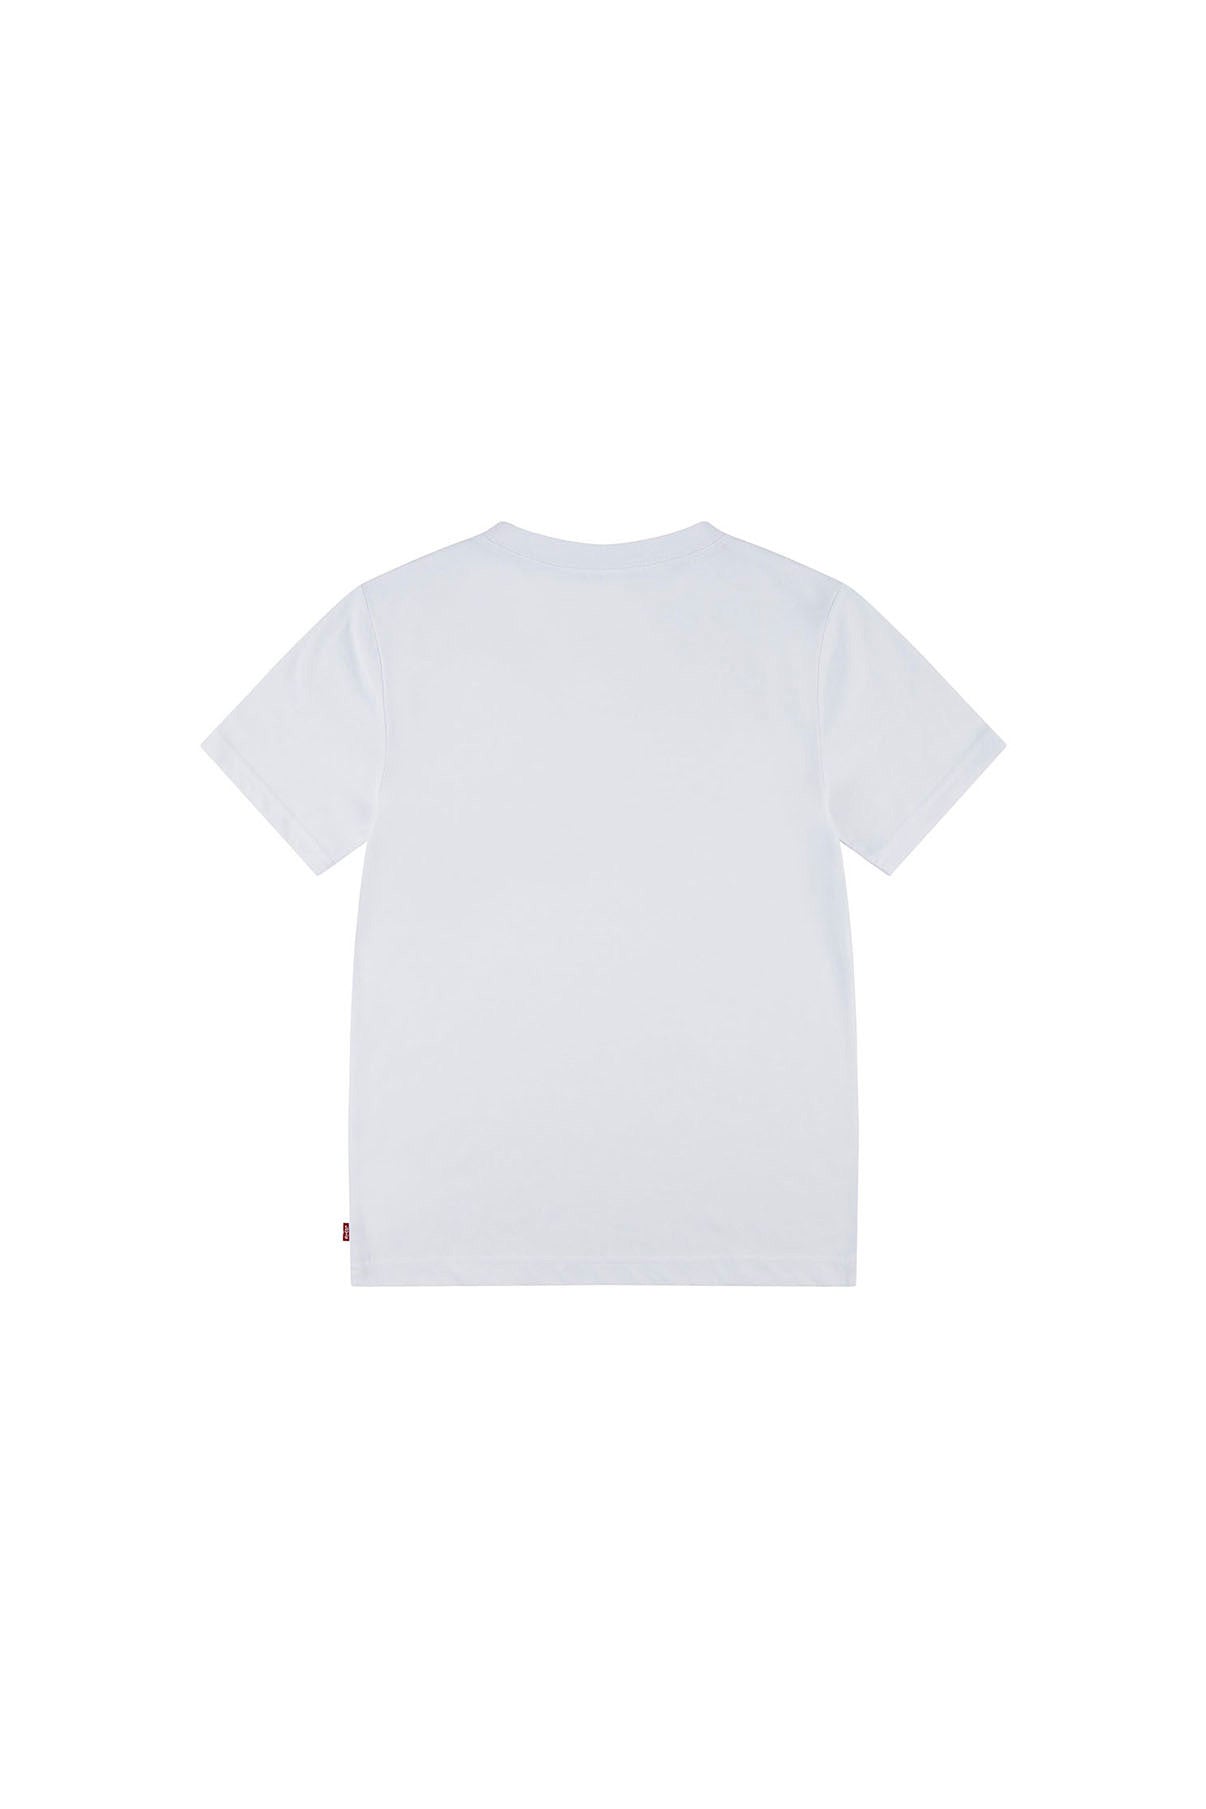 LEVIS BOY T-shirt Palm Silhouette